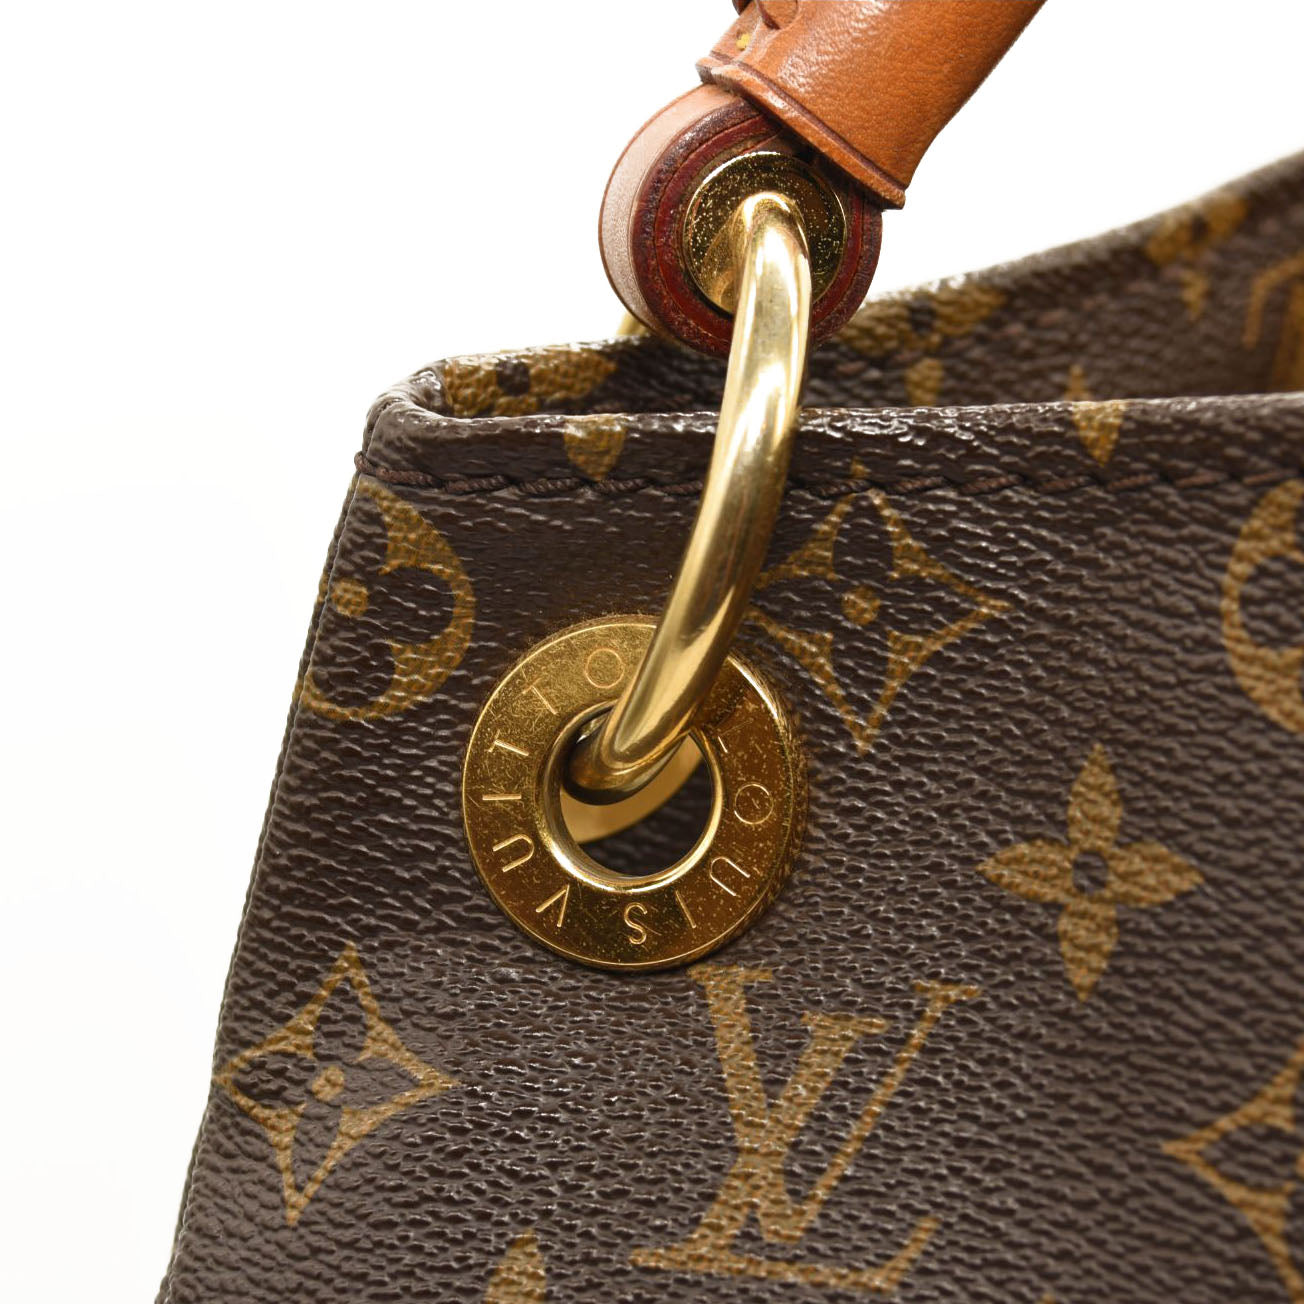 Louis Vuitton Artsy MM - Artsy Monogram Canvas Shoulder Bag